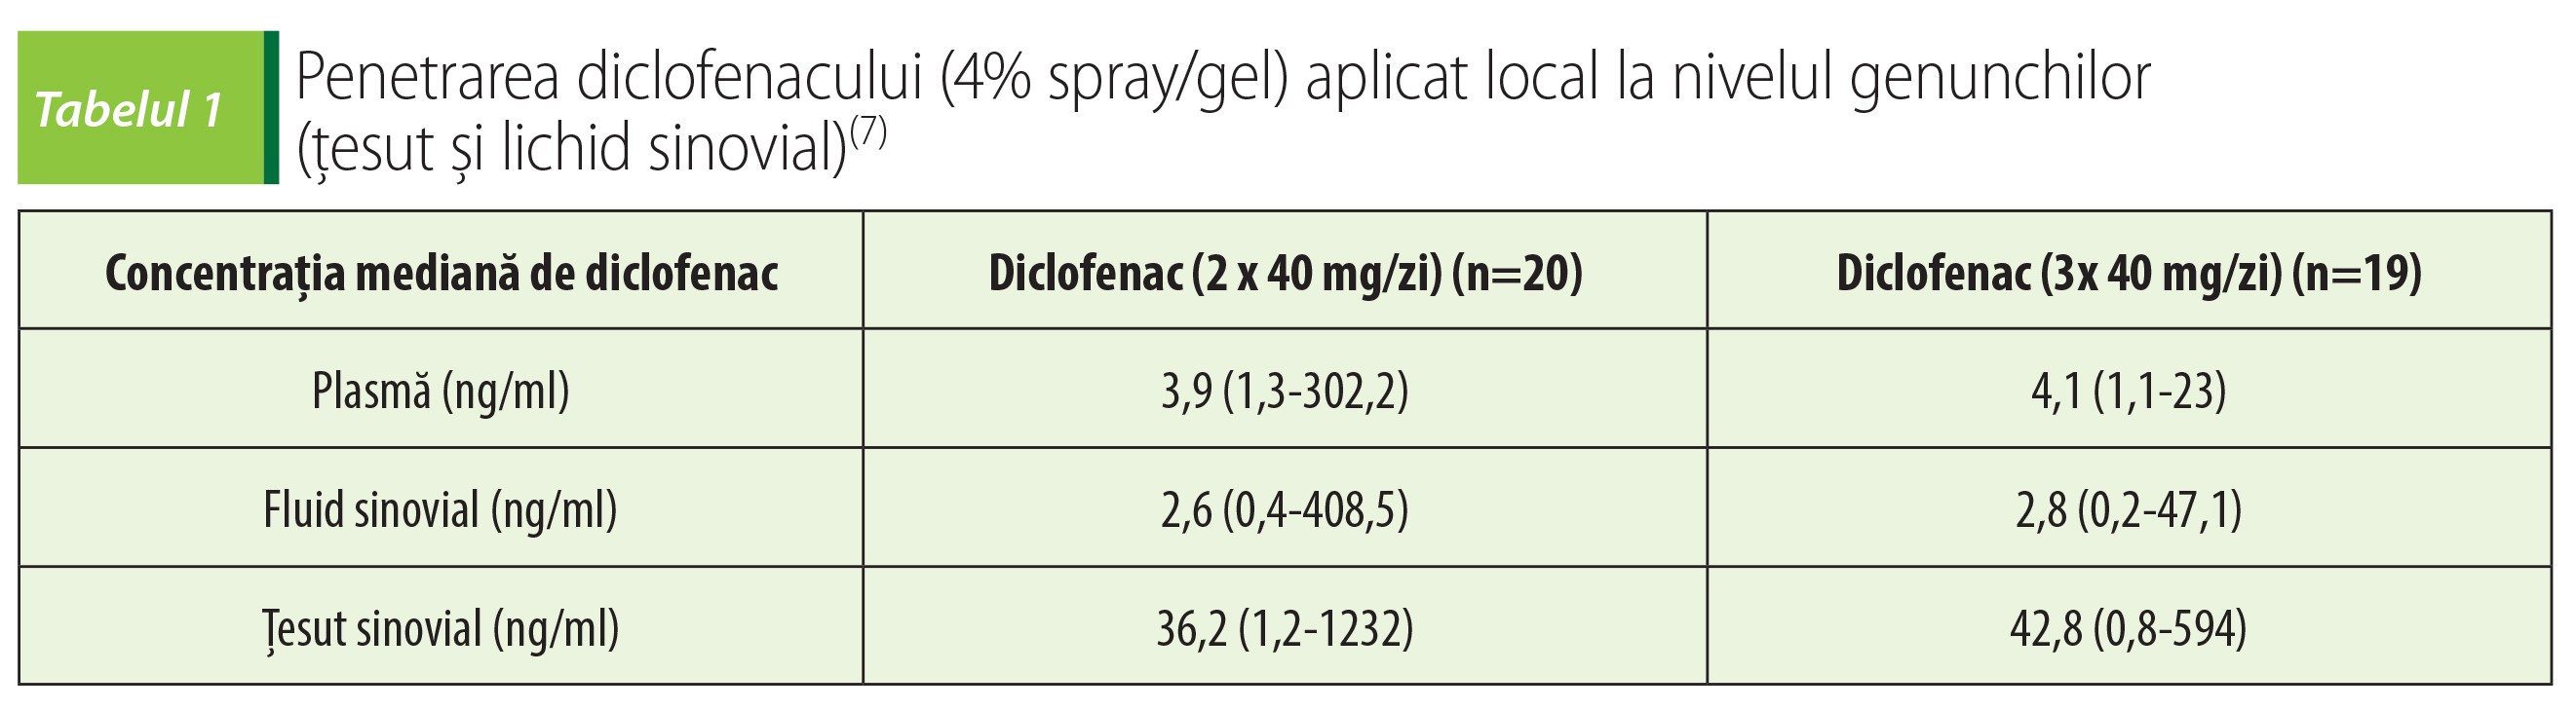 Tabelul 1 Penetrarea diclofenacului (4% spray gel) aplicat local la nivelul genunchilor